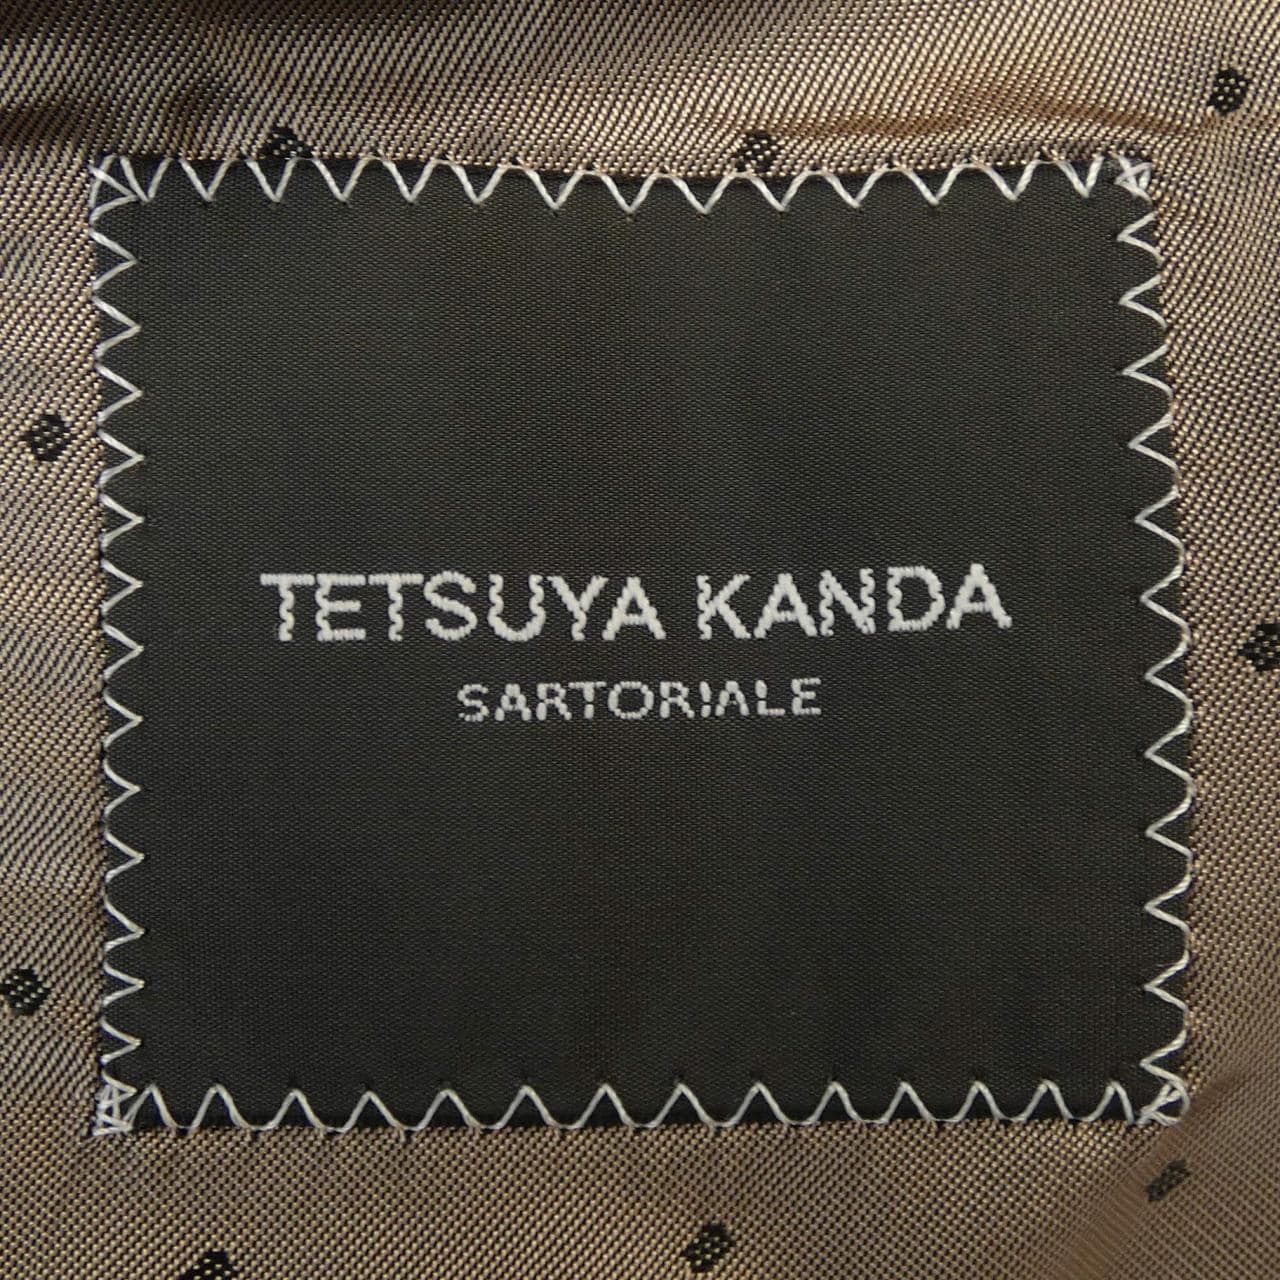 TETSUYA KANDA ジャケット